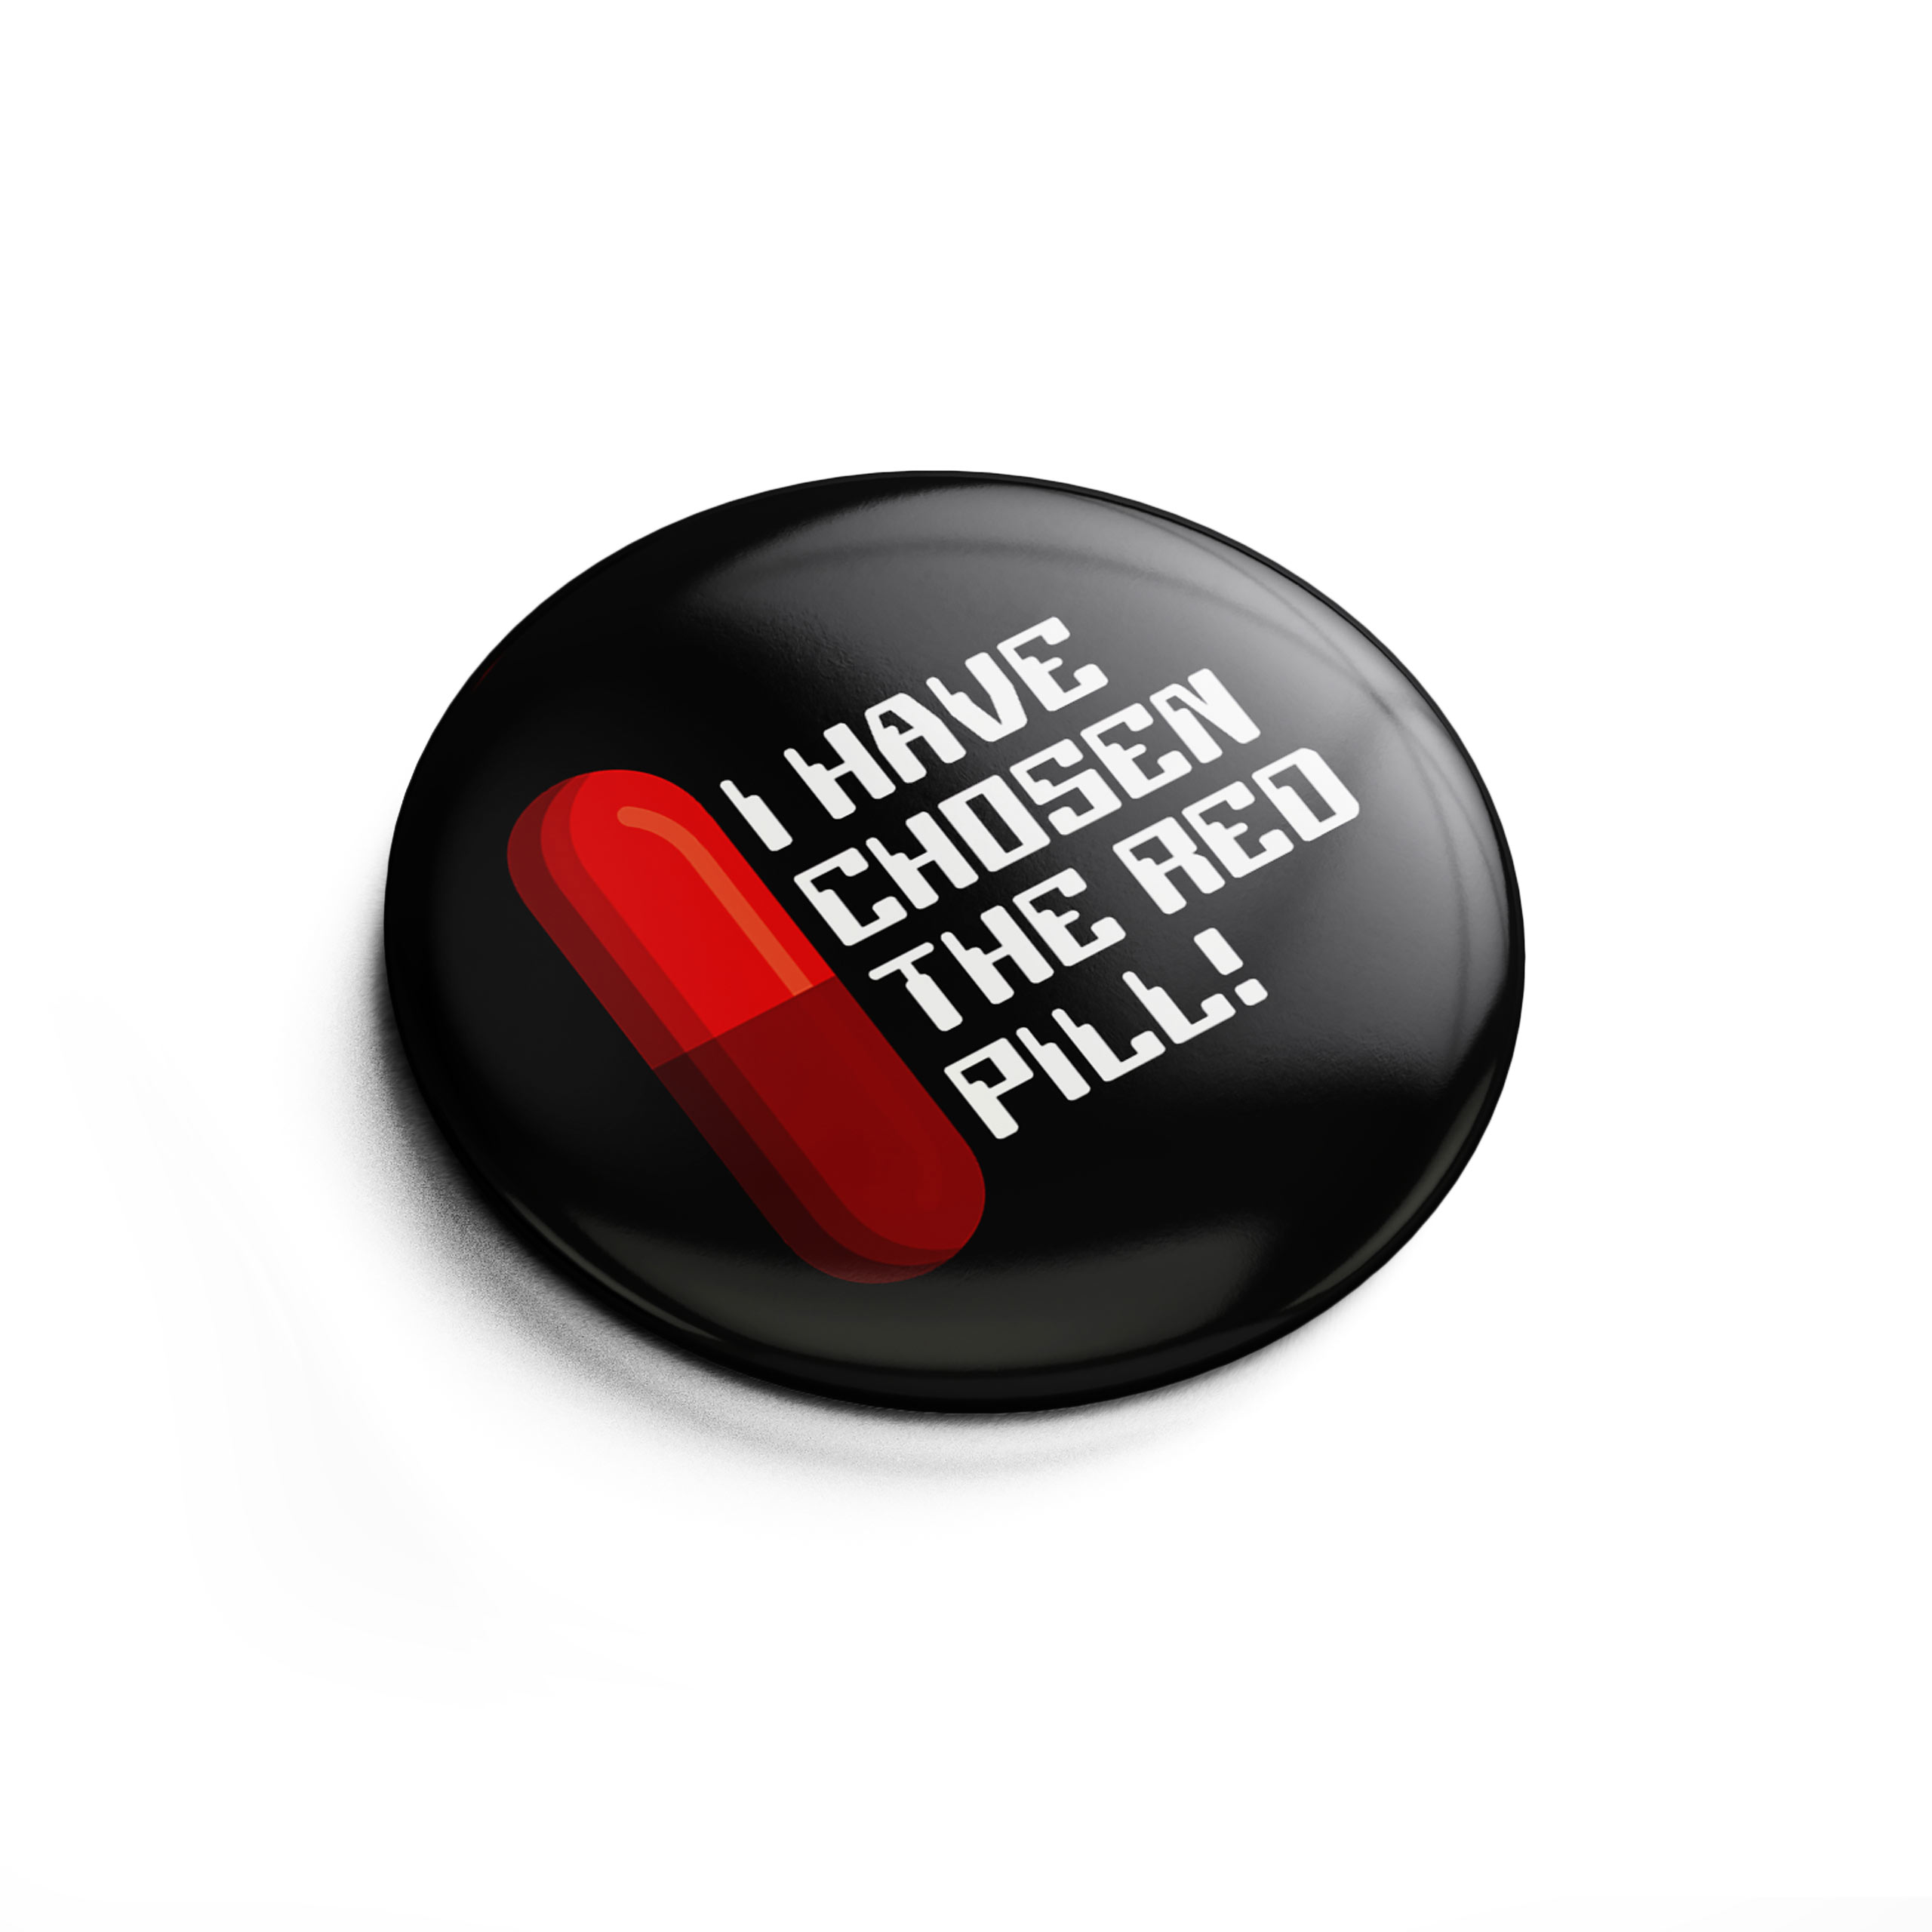 Red Pill Button for Matrix Fans